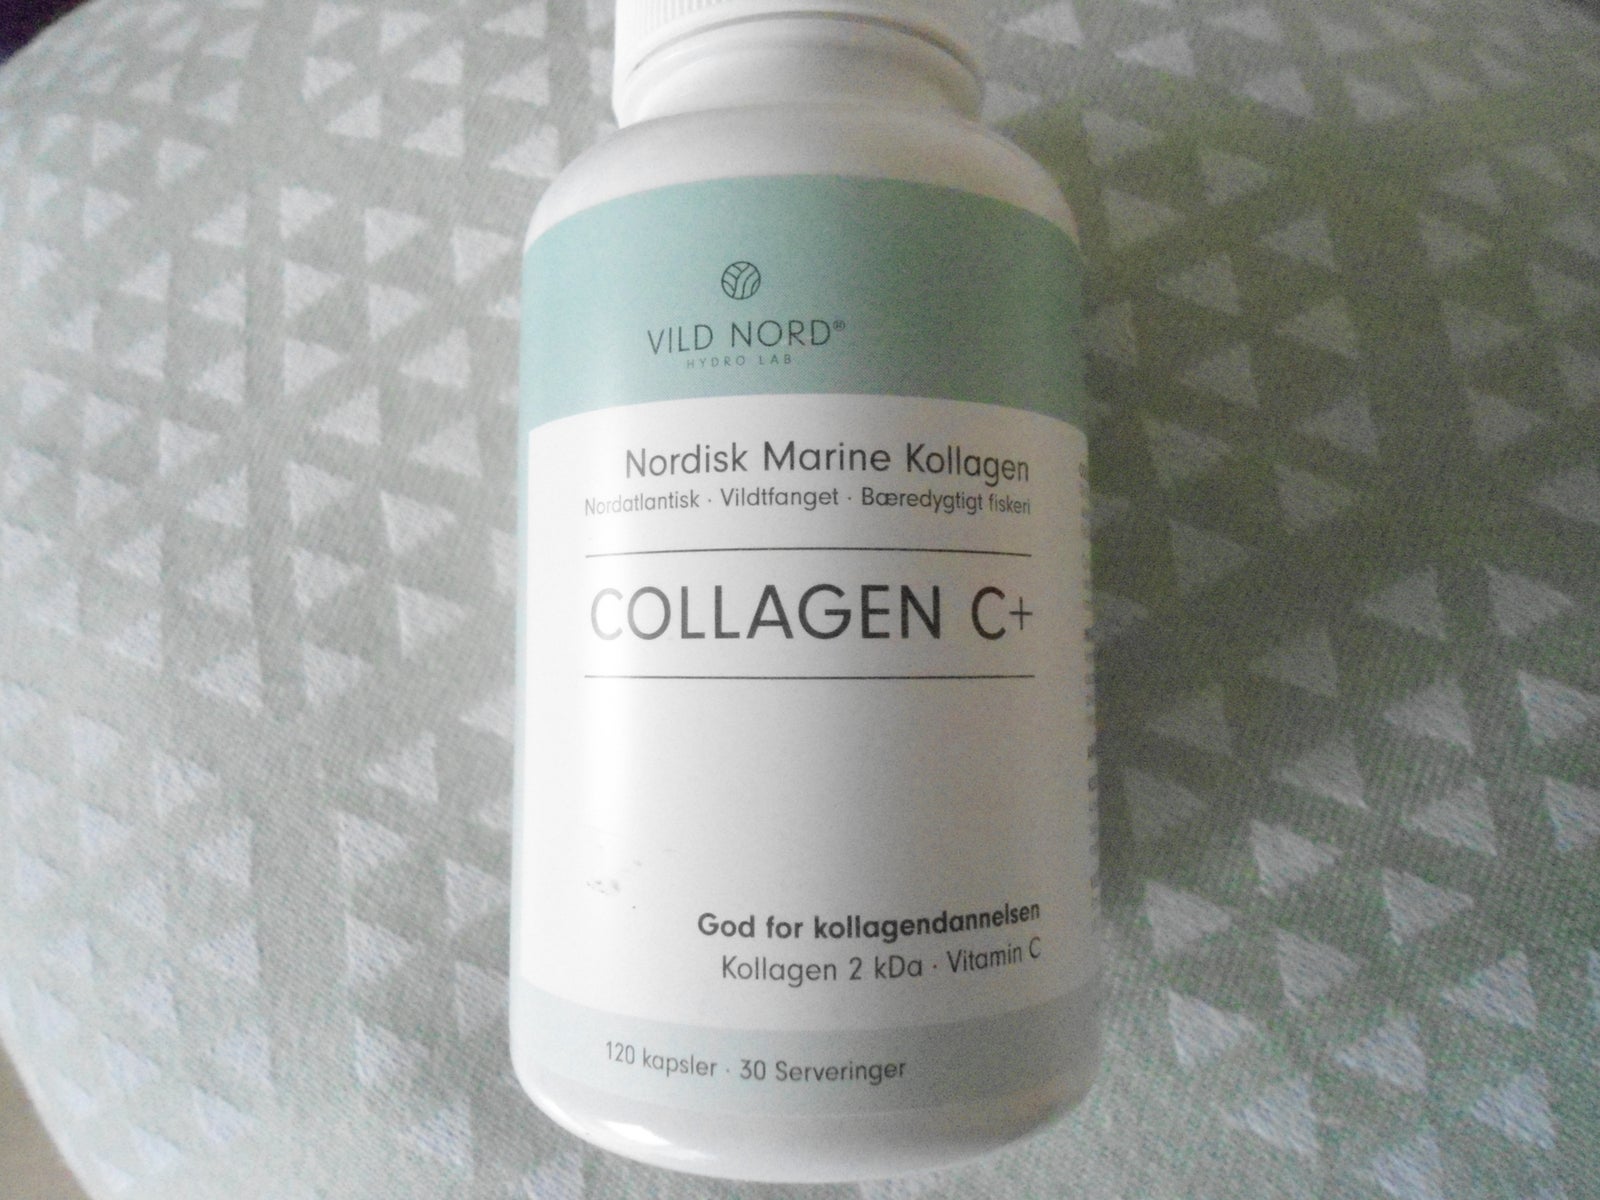 Kosttilskud, vild nord collagen c+